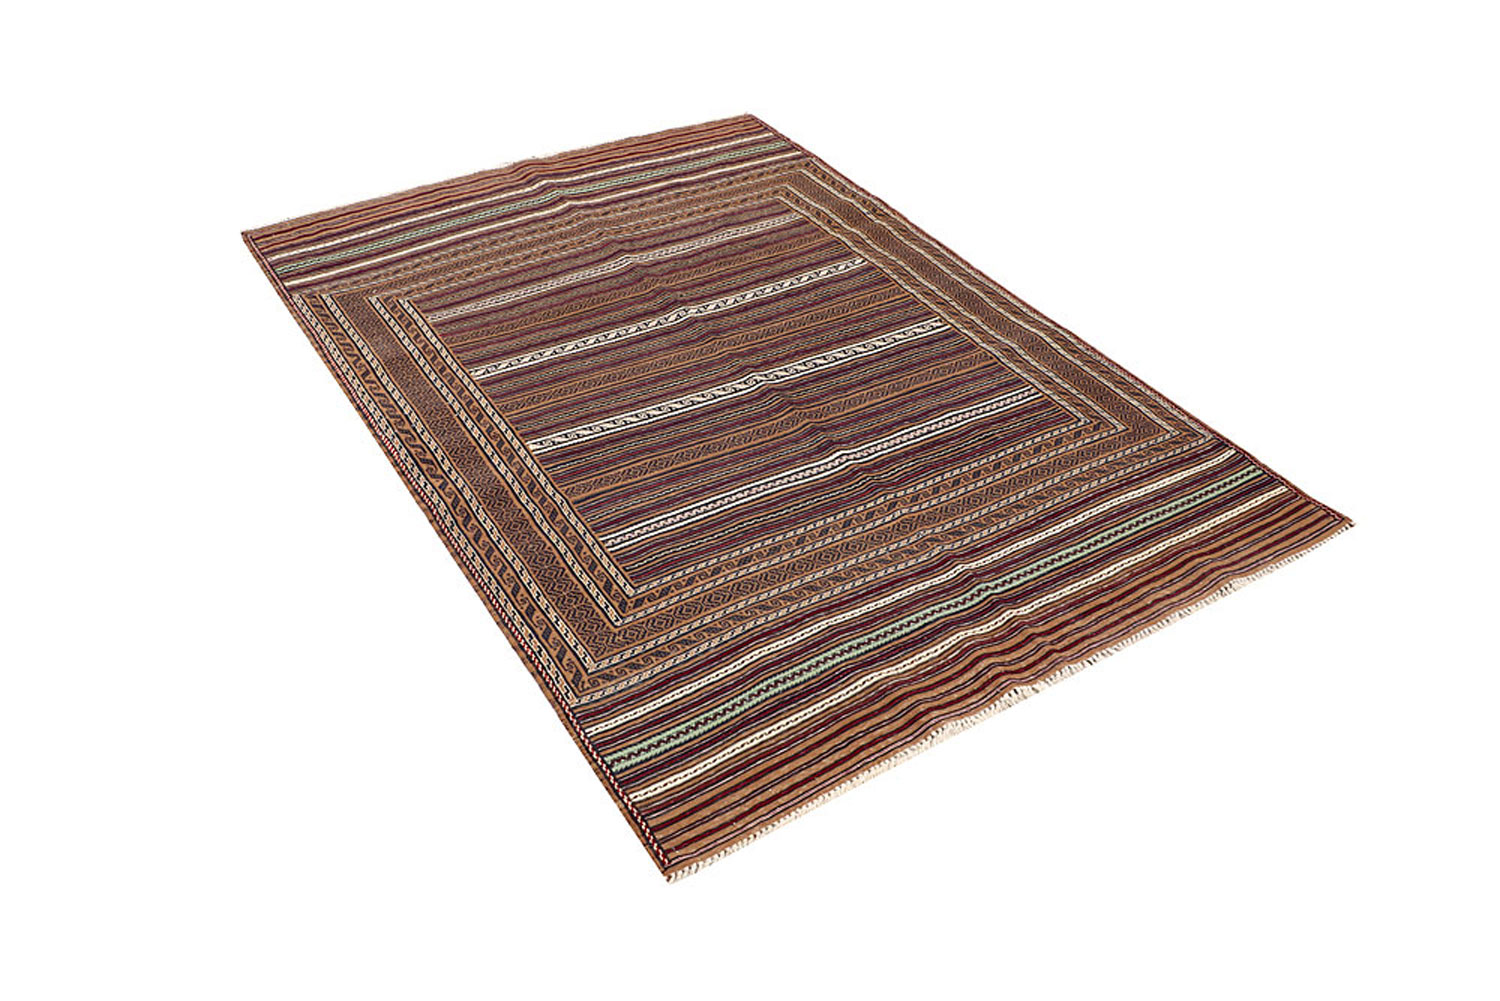 Baluch Carpet